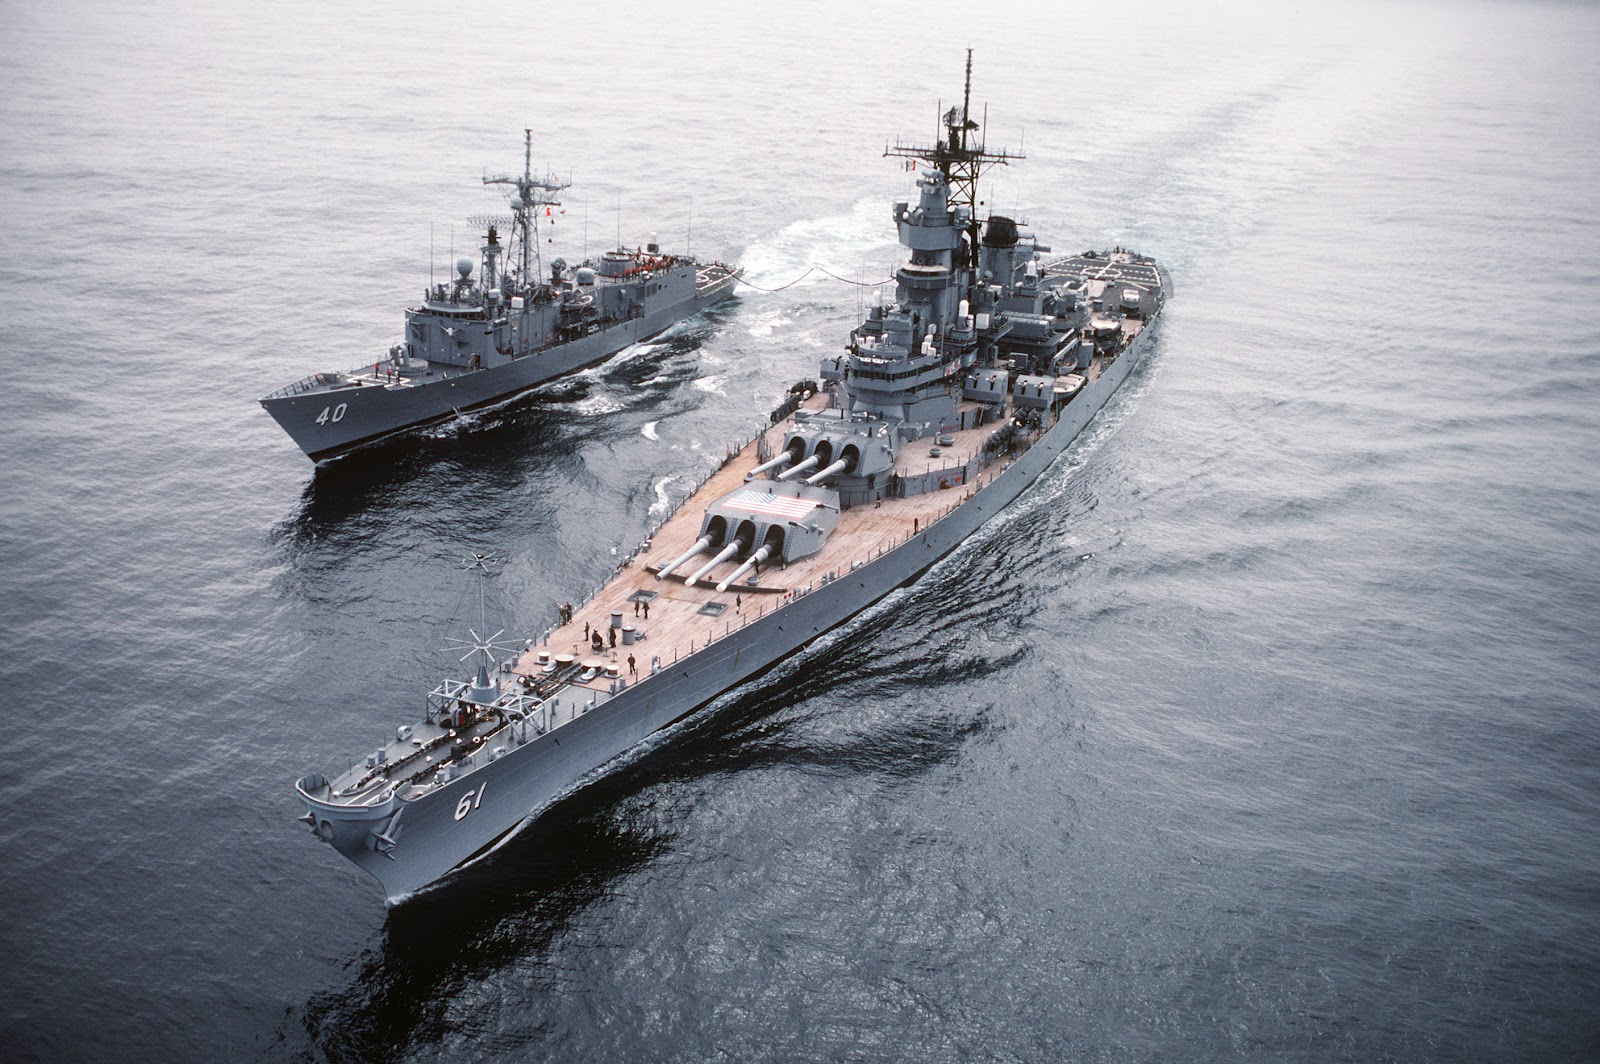  War Stories FWS Ships of the LineThe Battleship and Battlecruiser